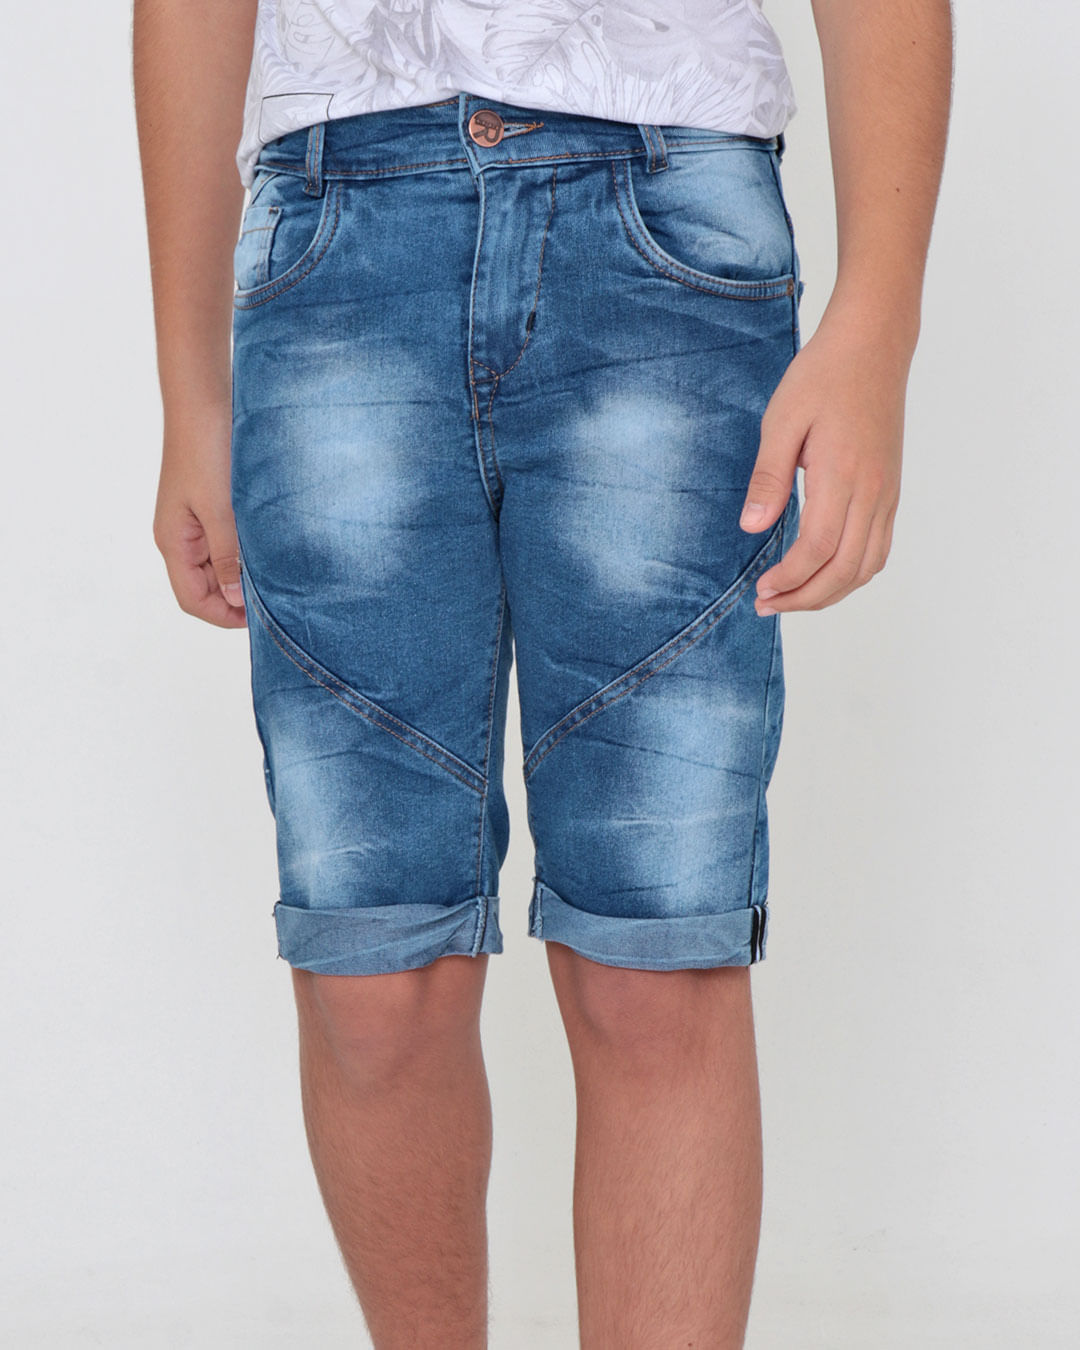 Short-Jeans-Juvenil-Com-Recorte-Barra-Dobrada-Azul